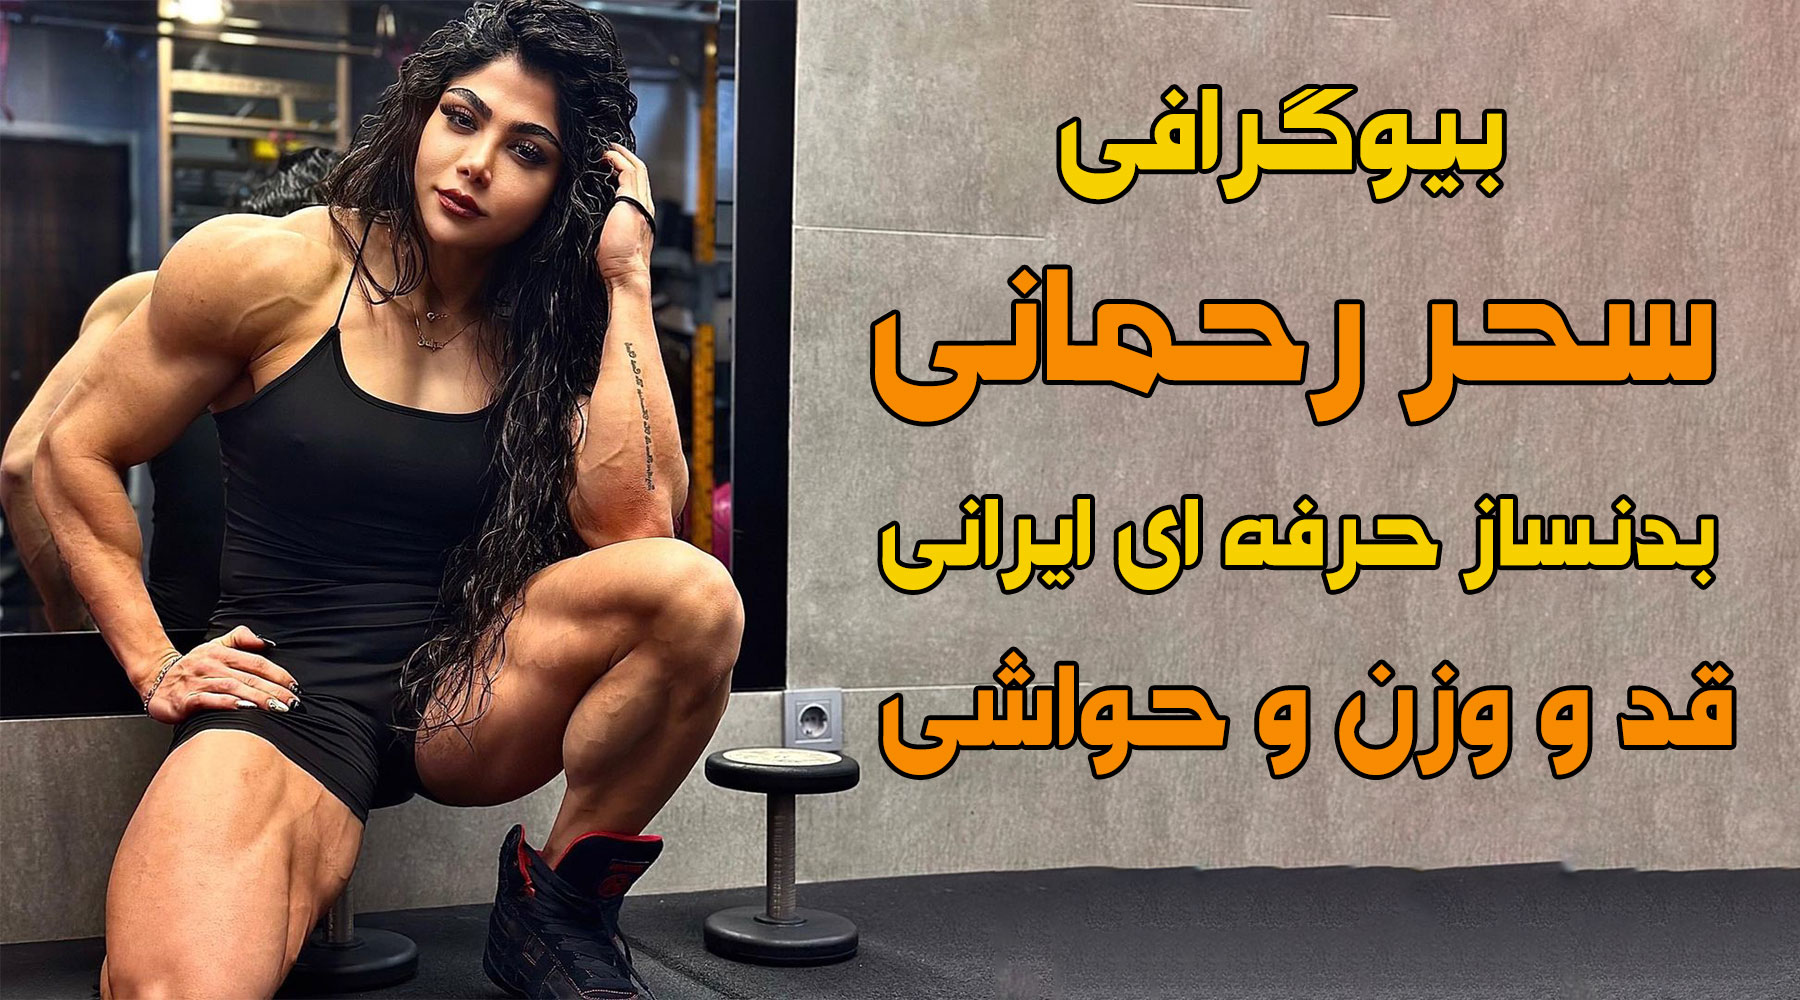 بیوگرافی سحر رحمانی بدنساز حرفه ای ایرانی، قد و وزن و حواشی